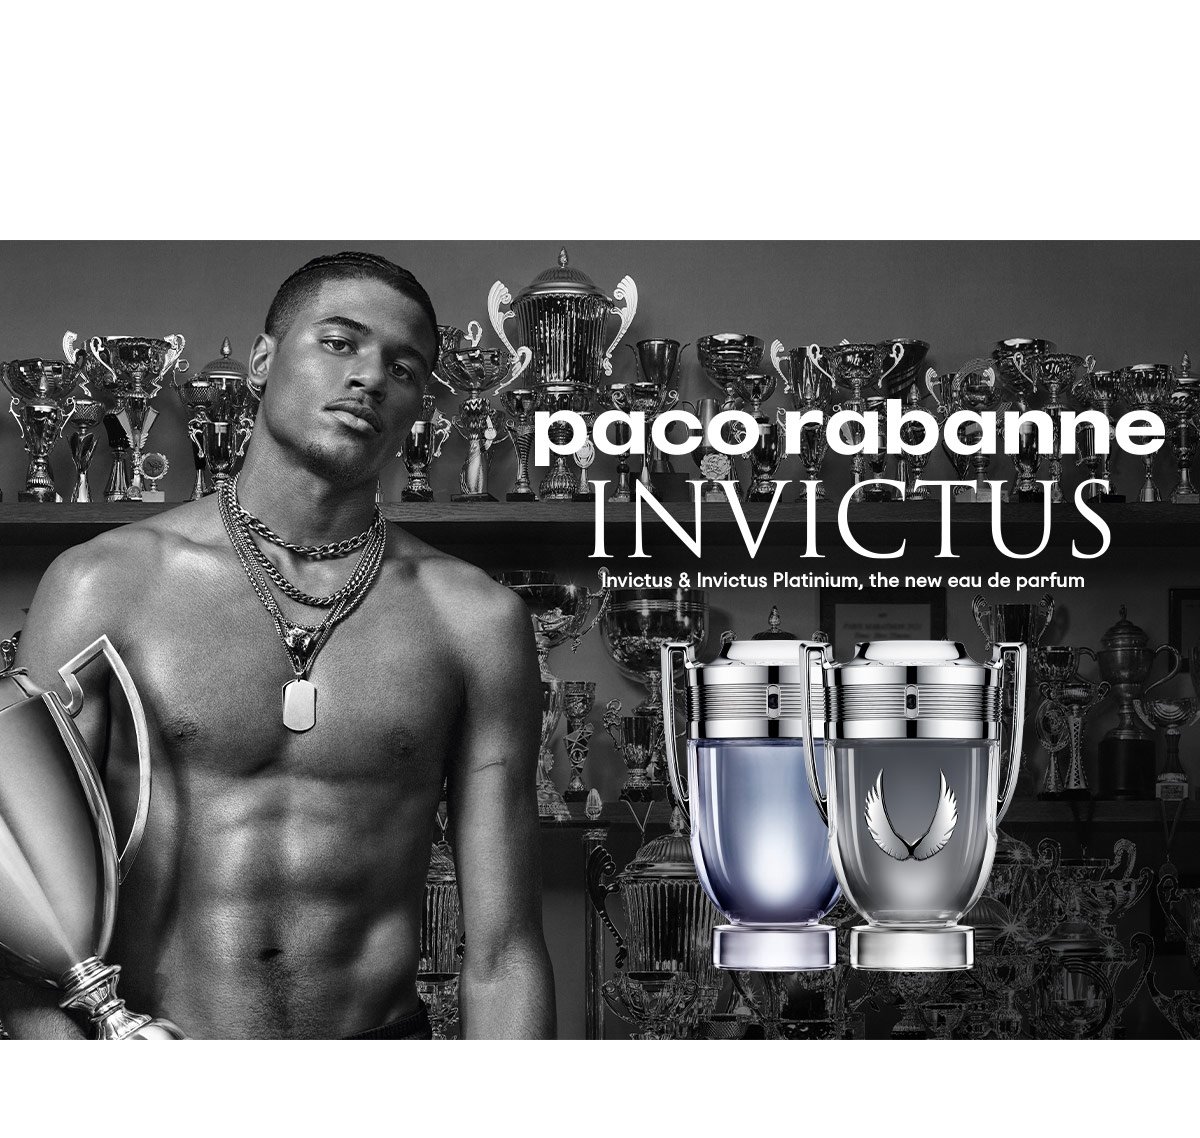 Objednajte produkty z kolekcie Invictus od Paco Rabanne a my vám k balíčku pribalíme cestovný sprej Invictus Platinum ako darček.